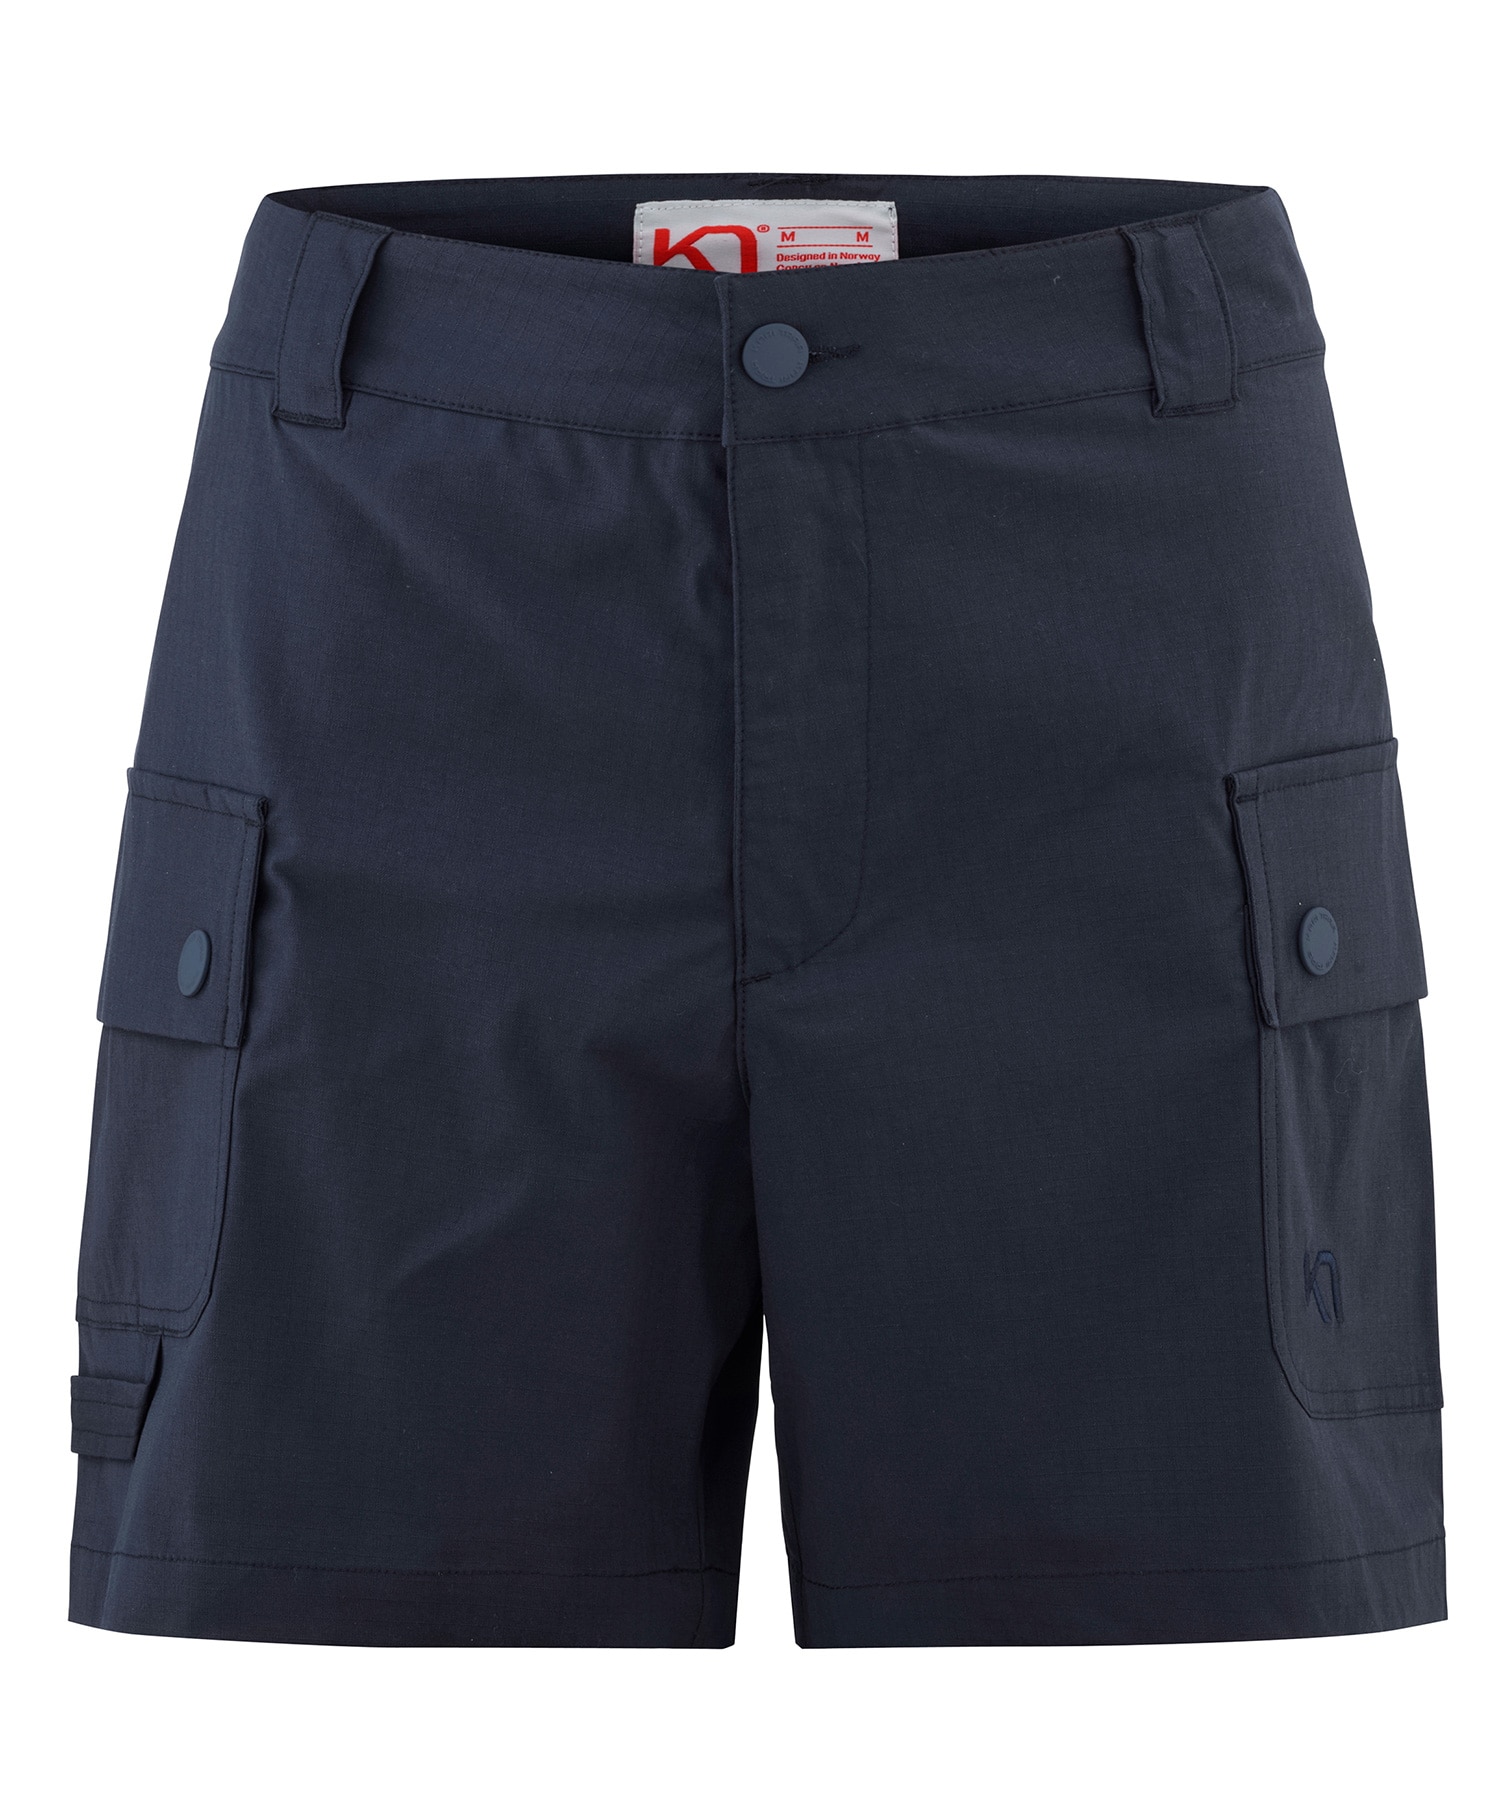 Kari Traa Mølster shorts